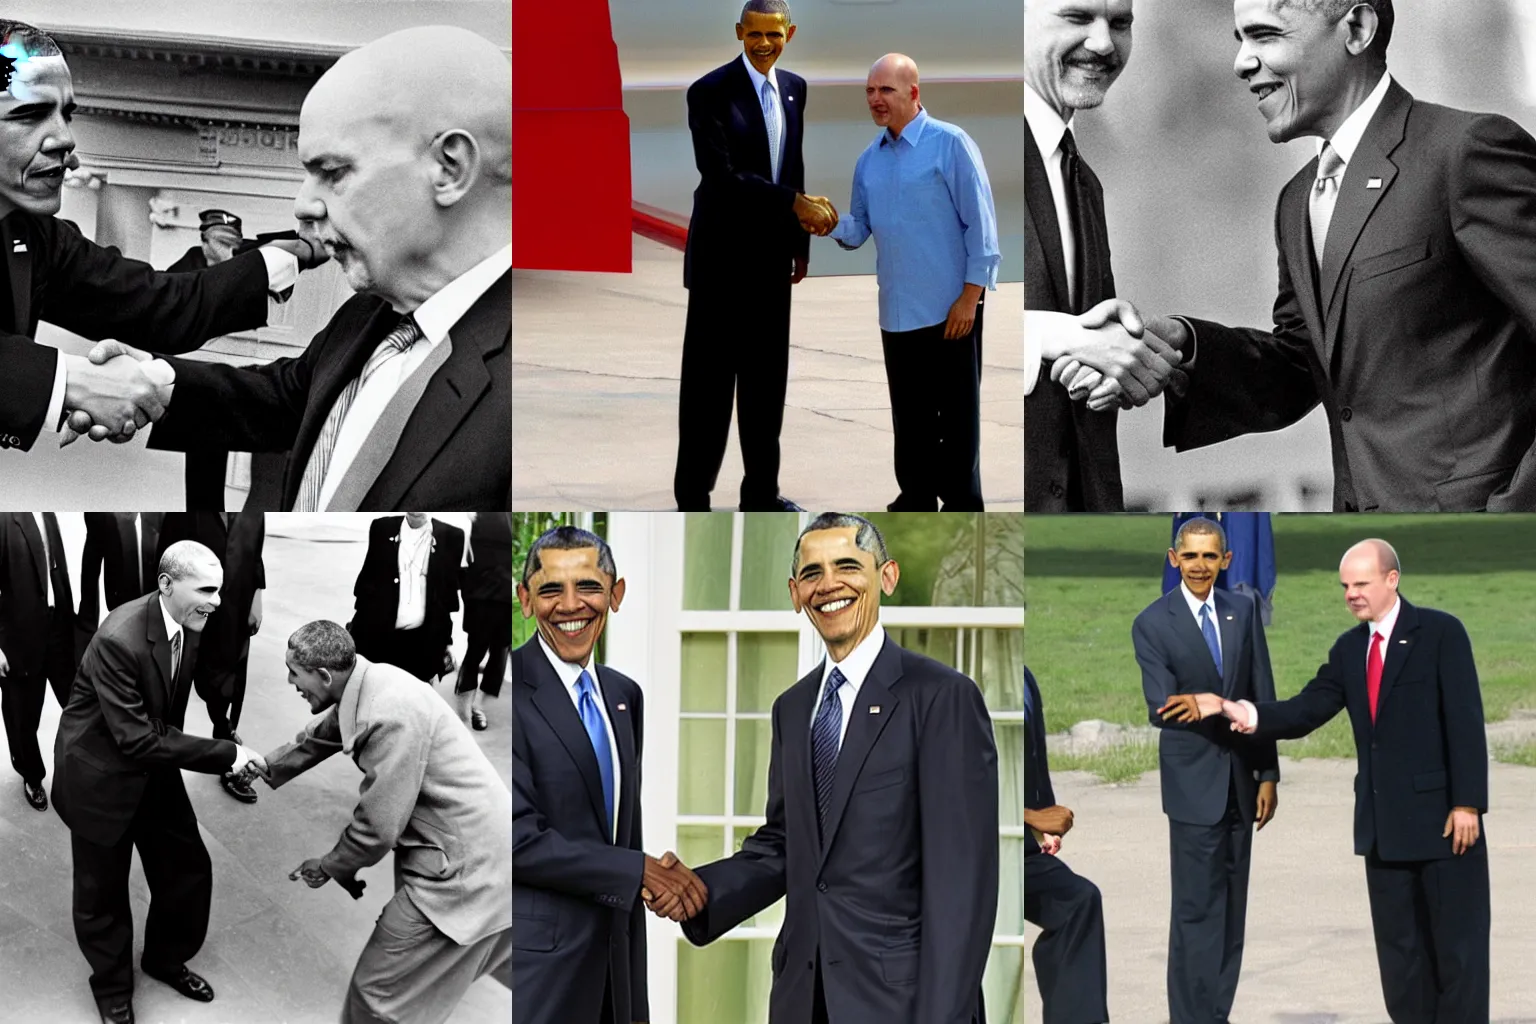 Prompt: obama handshaking Lenin